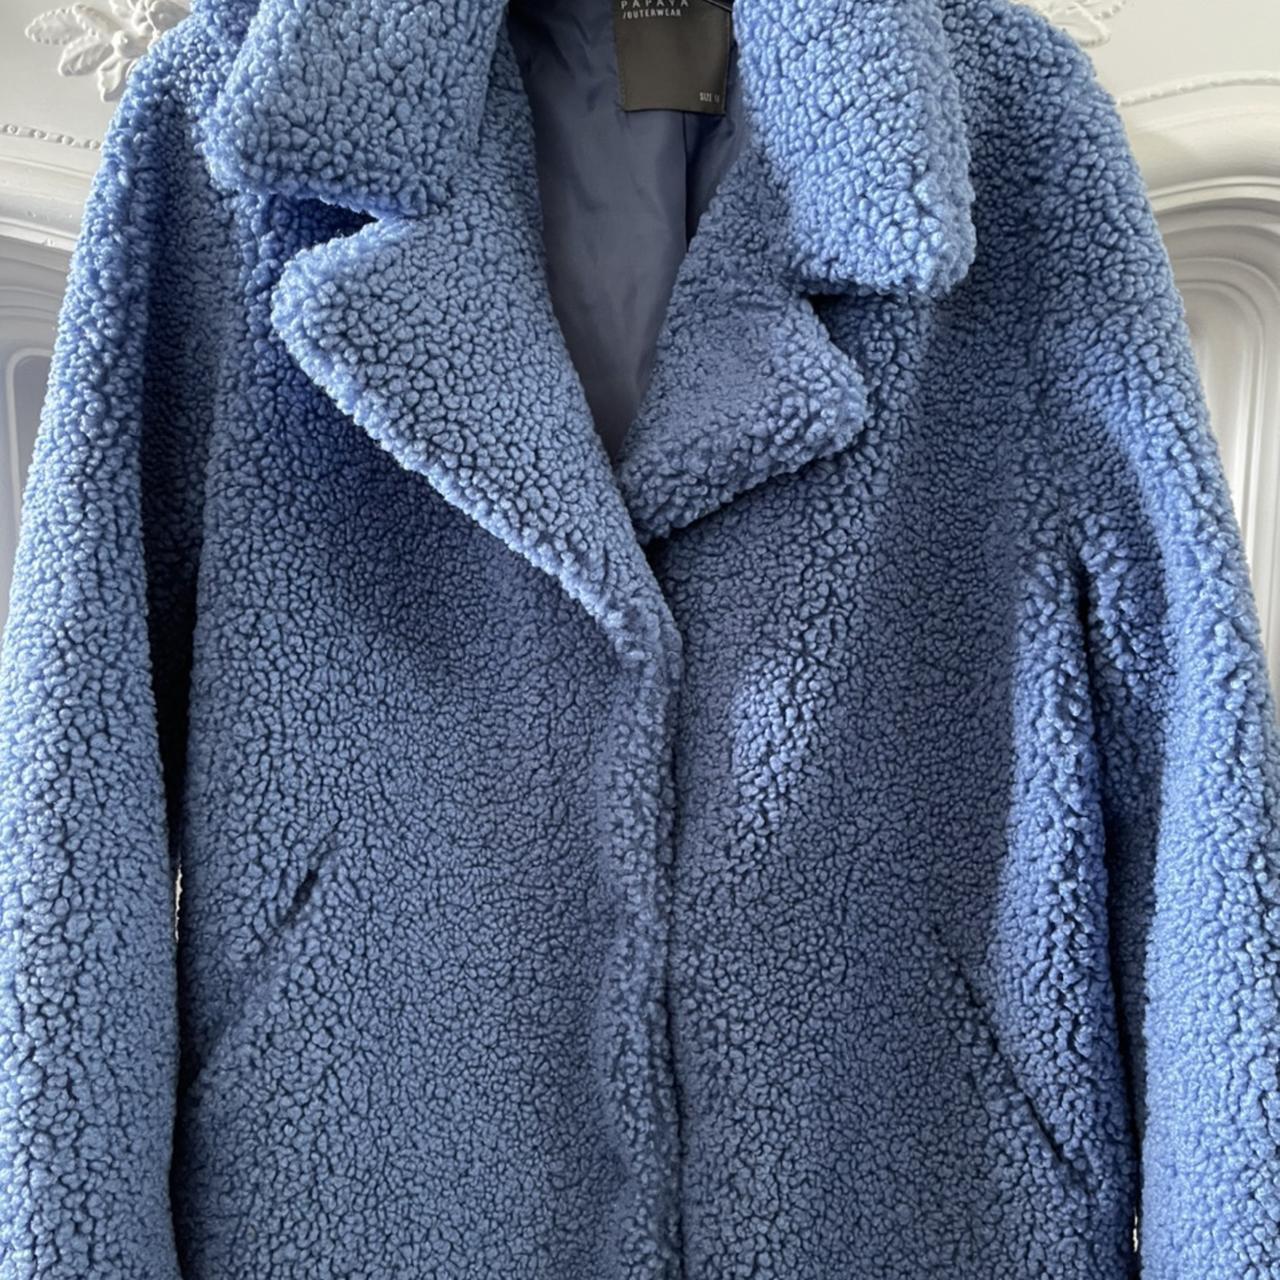 Gorgeous periwinkle blue teddy bear coat. Popper... - Depop